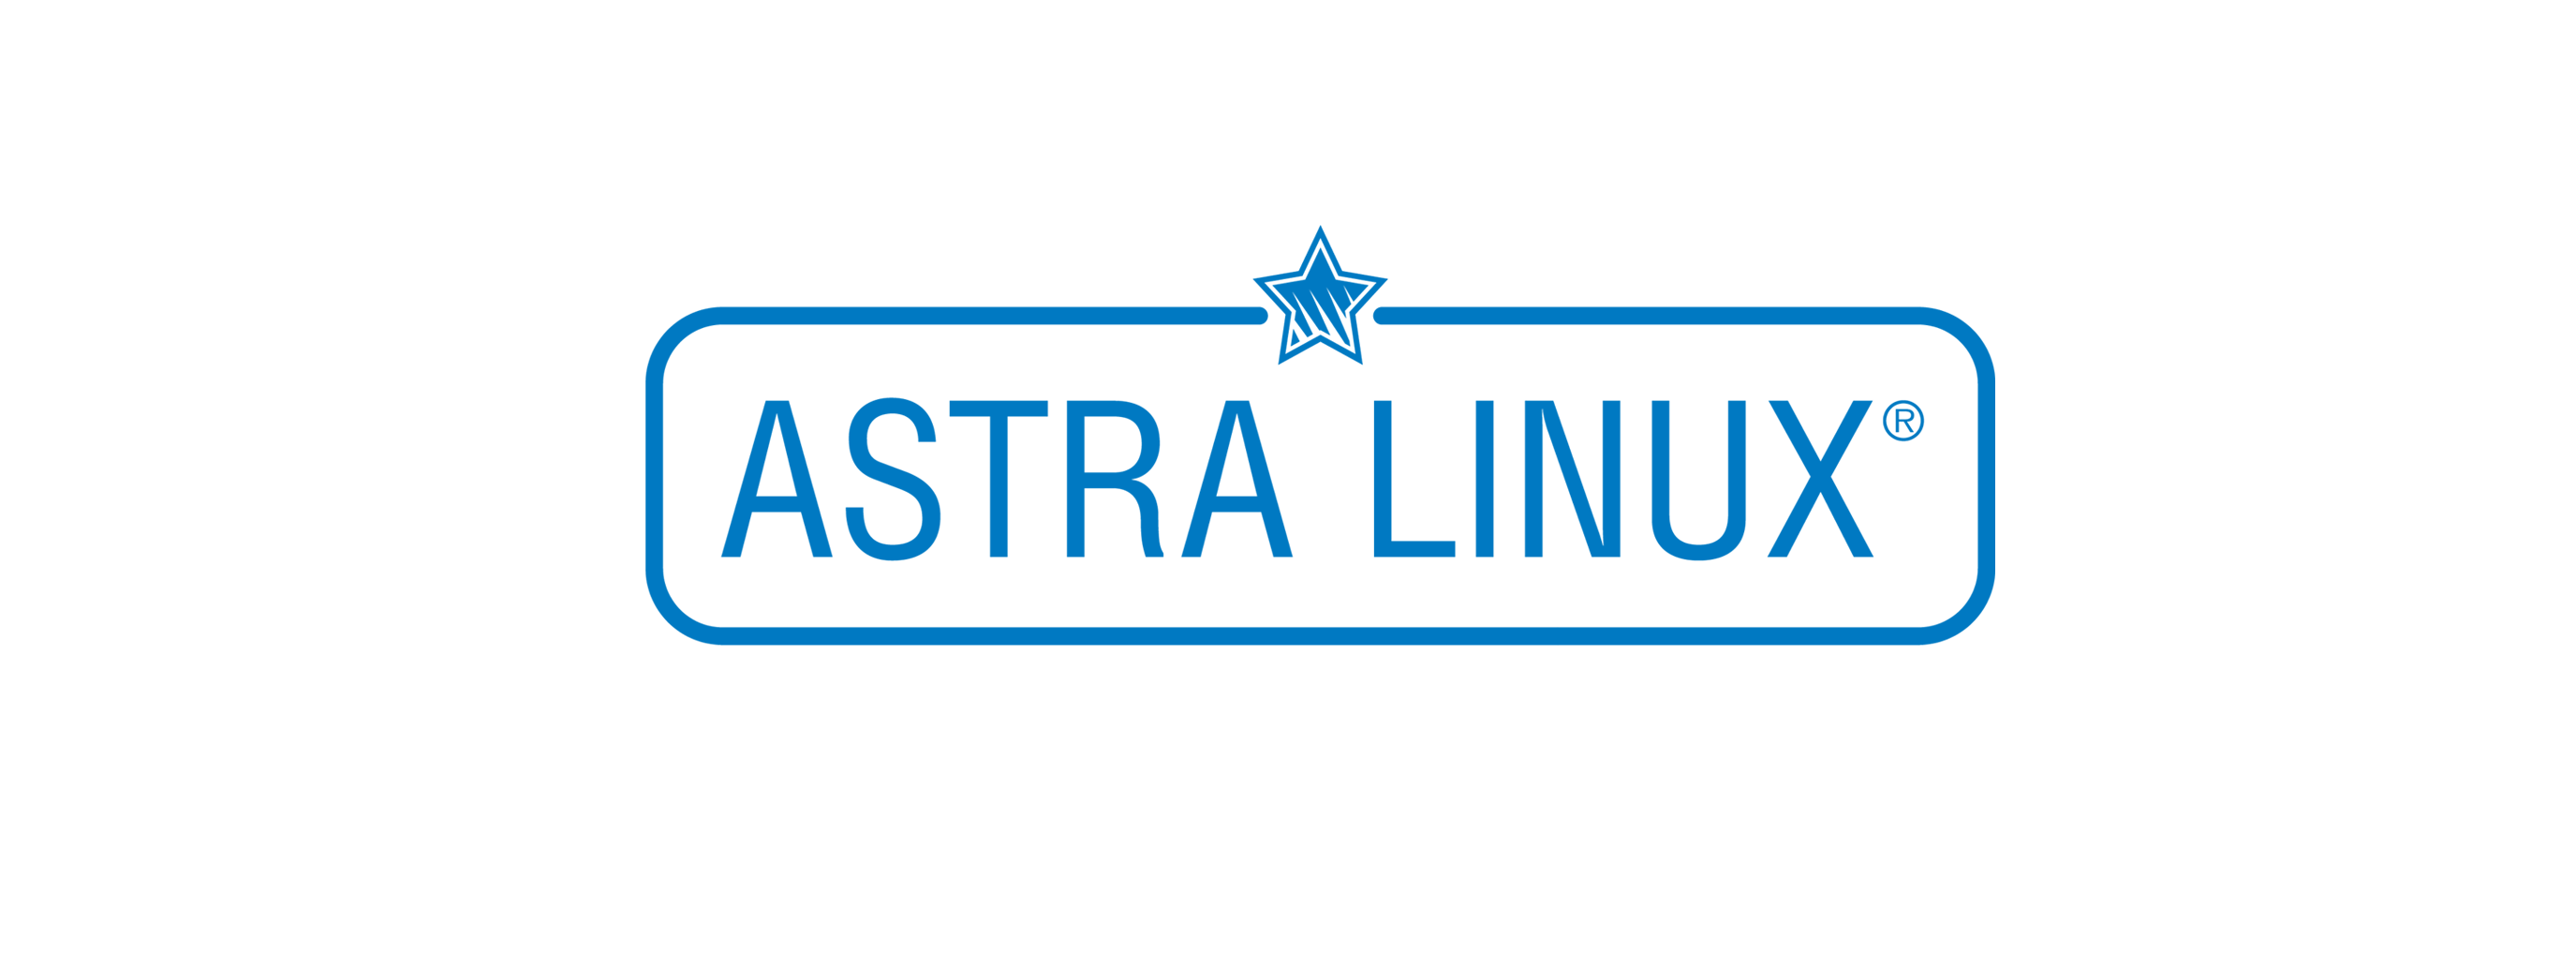 Лицензия РусБИТех Astra Linux Special Edition (очередное обновление 1.7), уровень защищенности Максимальный (Смоленск), РУСБ.10015-01 (ФСТЭК), Russian, на 24 месяца базовая лицензия для рабочей станции, электронный ключ (OS2101X8617DIG000WS02-PO24)